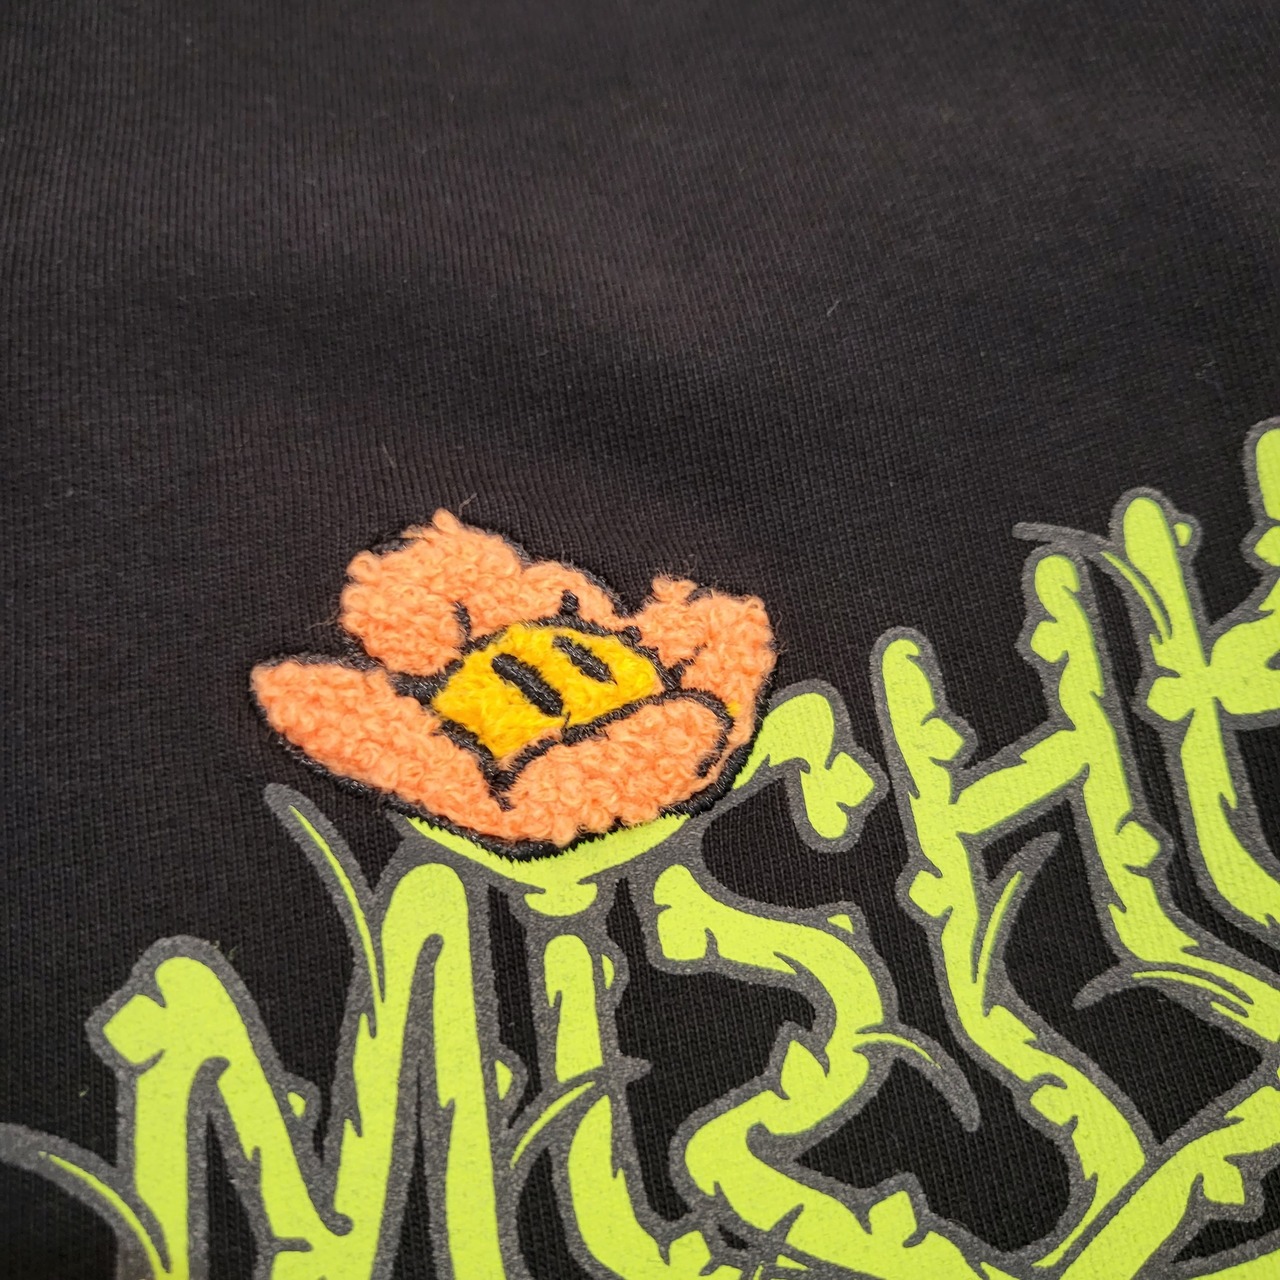 【MISHKA】MISHKA T-SHIRT